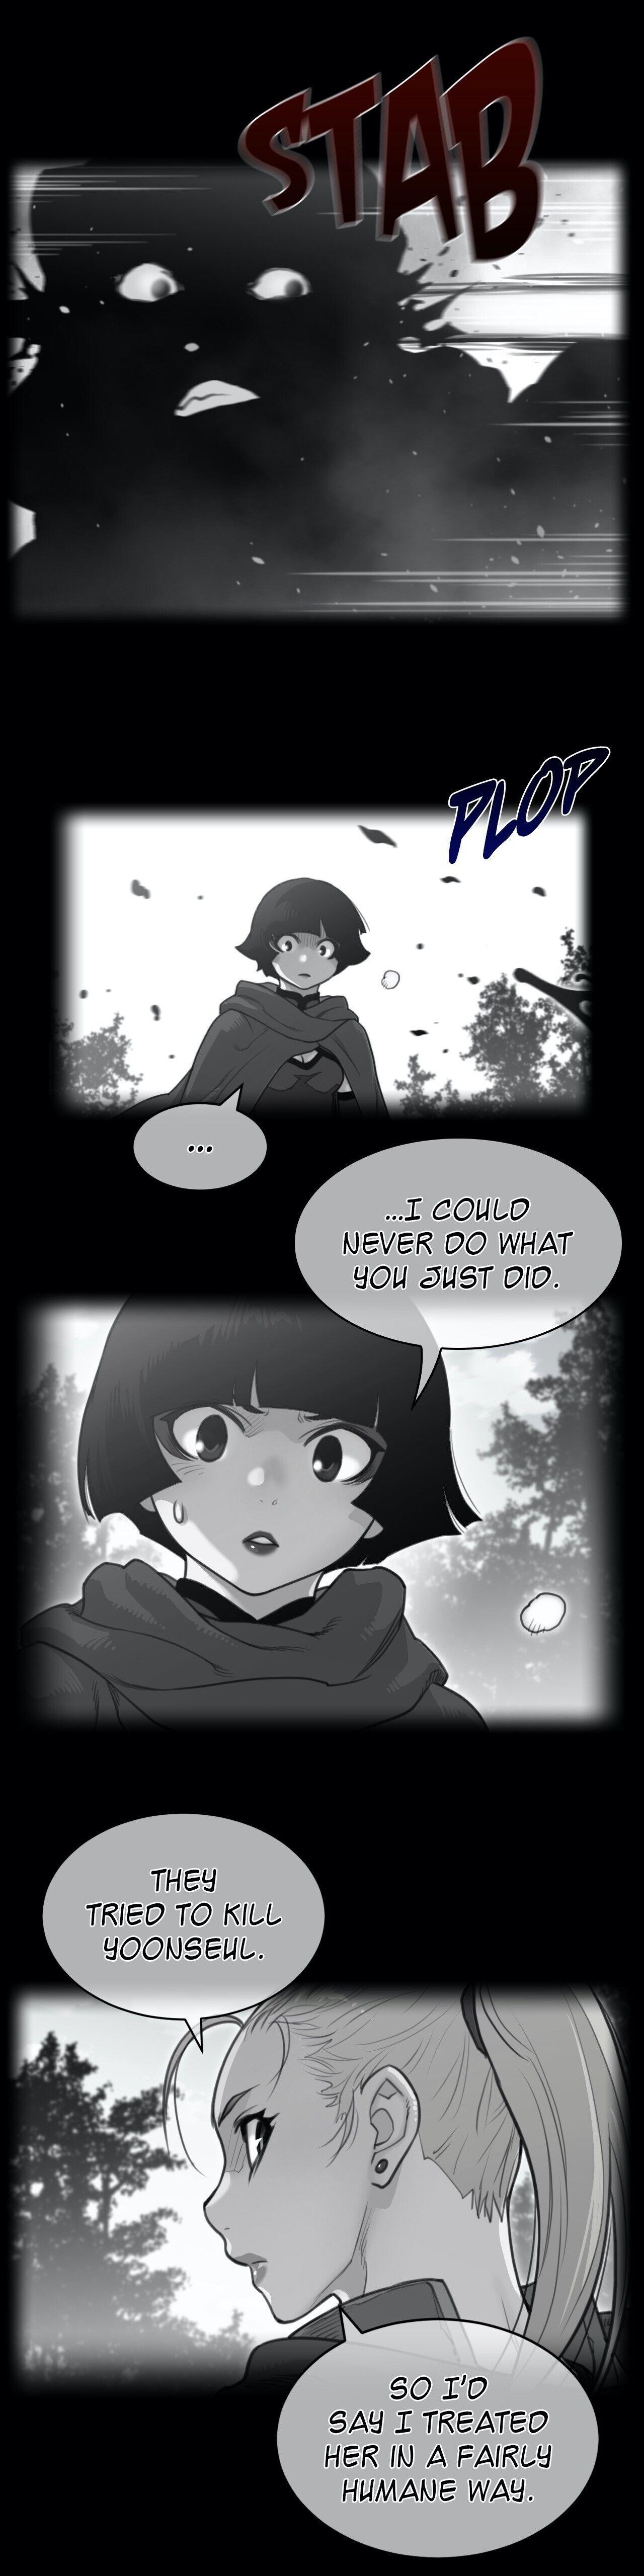 Perfect Half Chapter 135 : Another Reunion (Season 2 Finale) page 1 - Mangakakalot